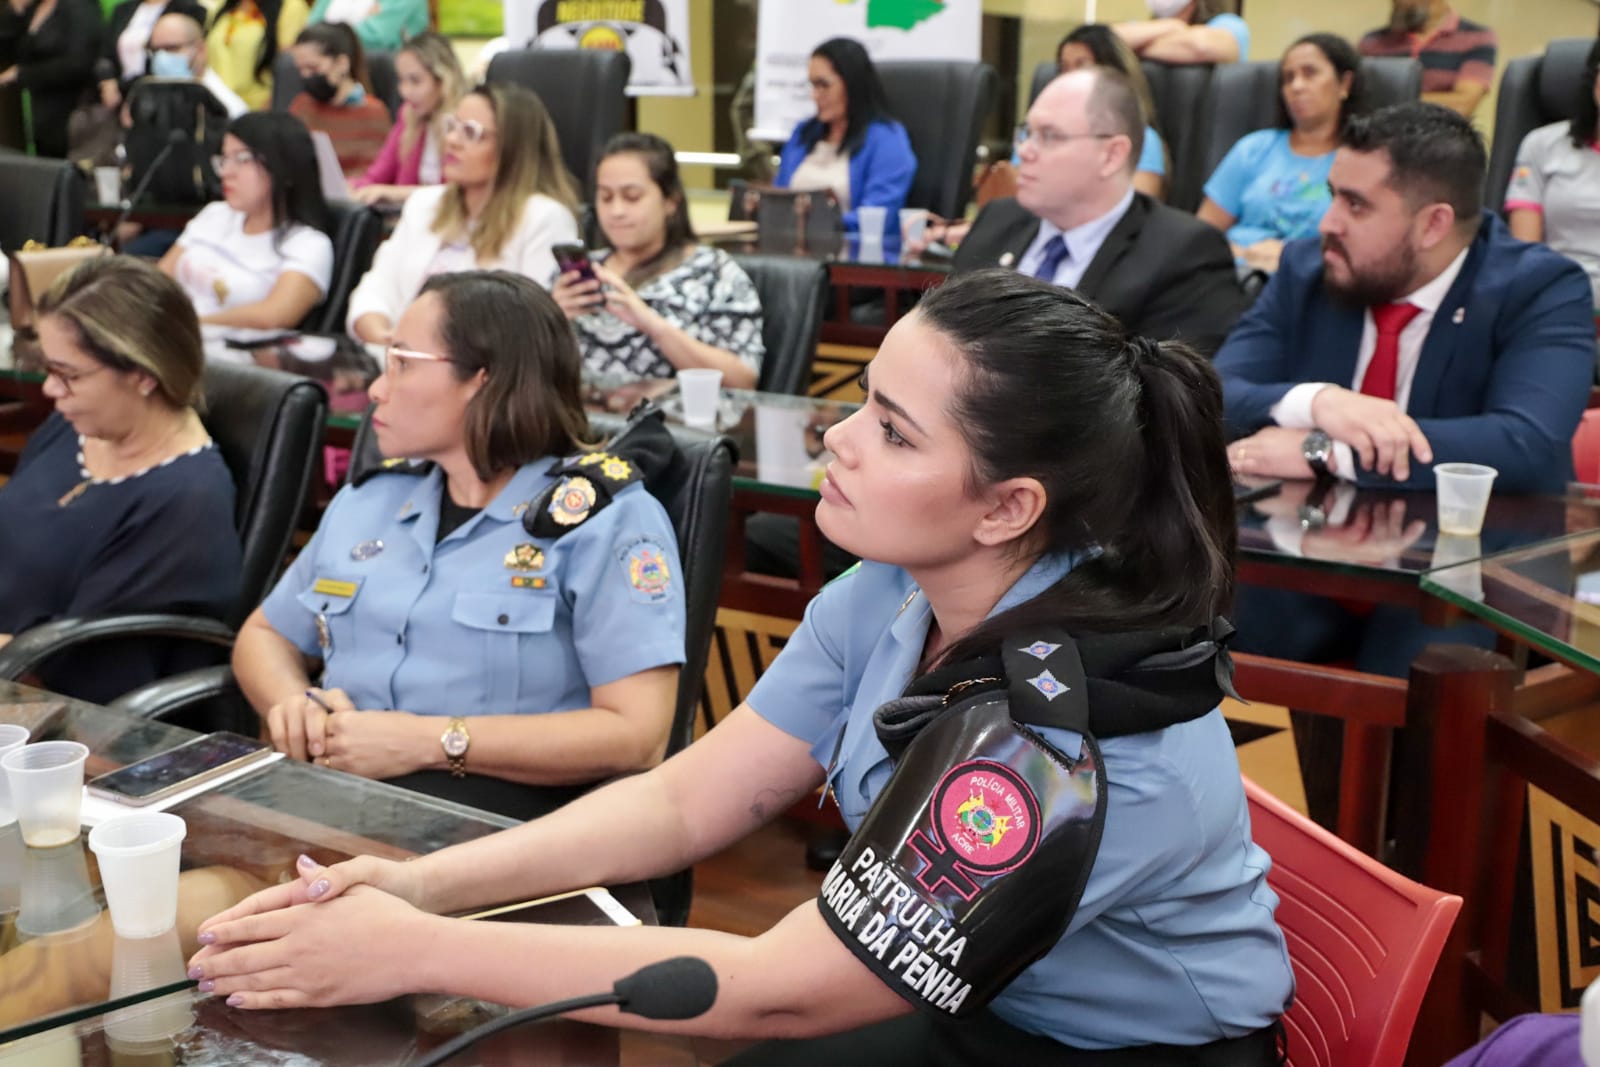 imagem de uma policial da patrulha maria da penha sentanda olhando para frente ao redor várias pessoas sentadas